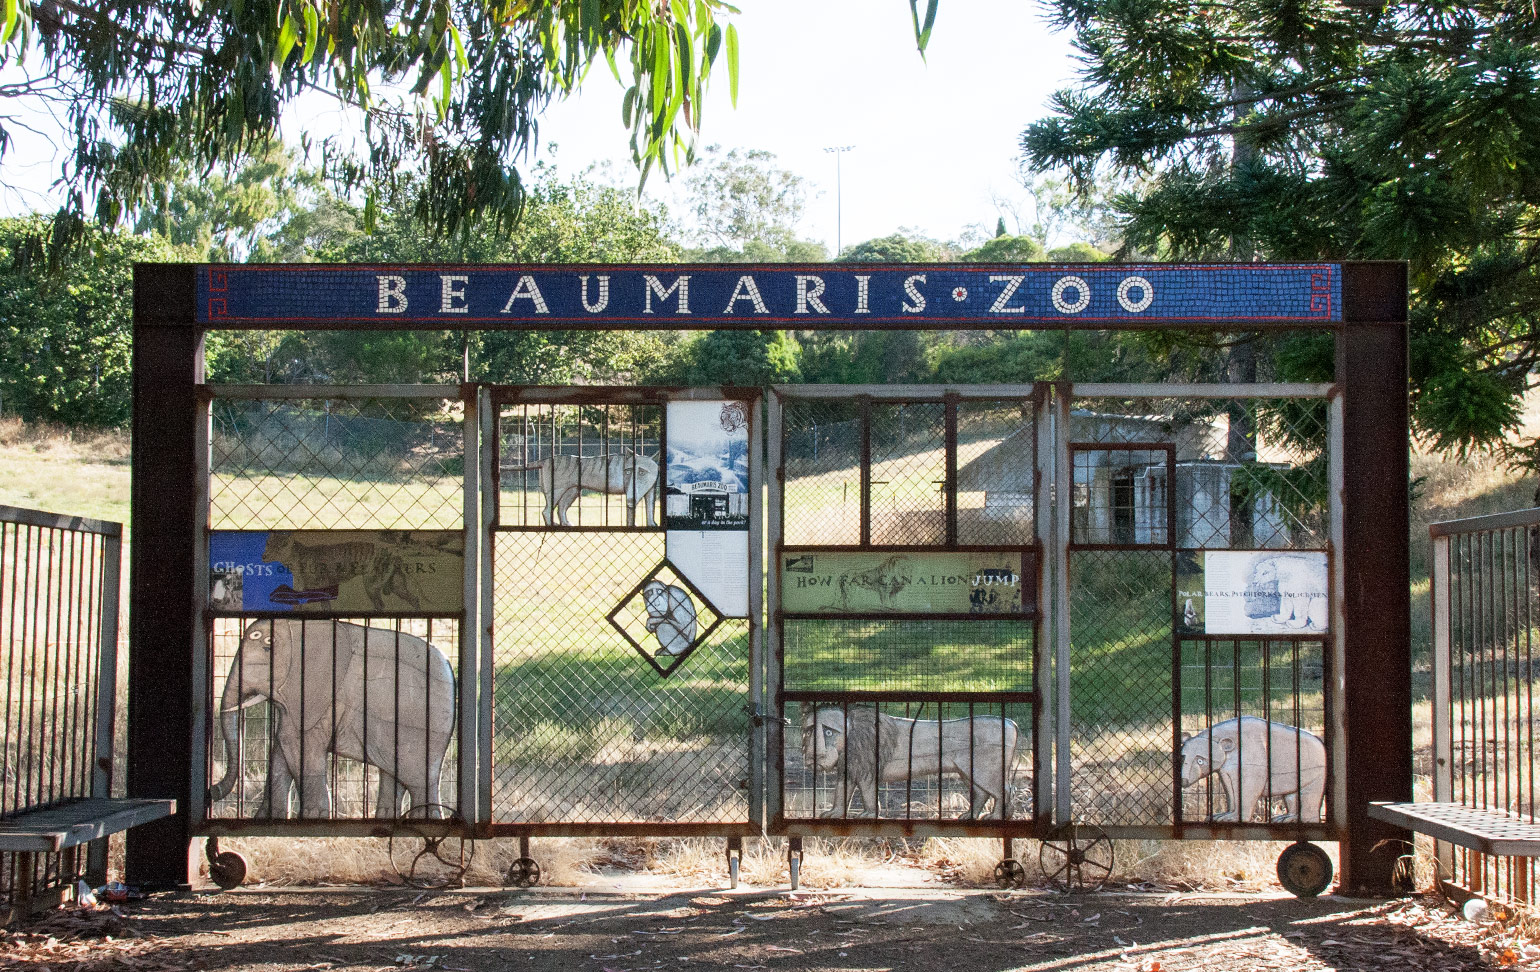 Beaumaris Zoo